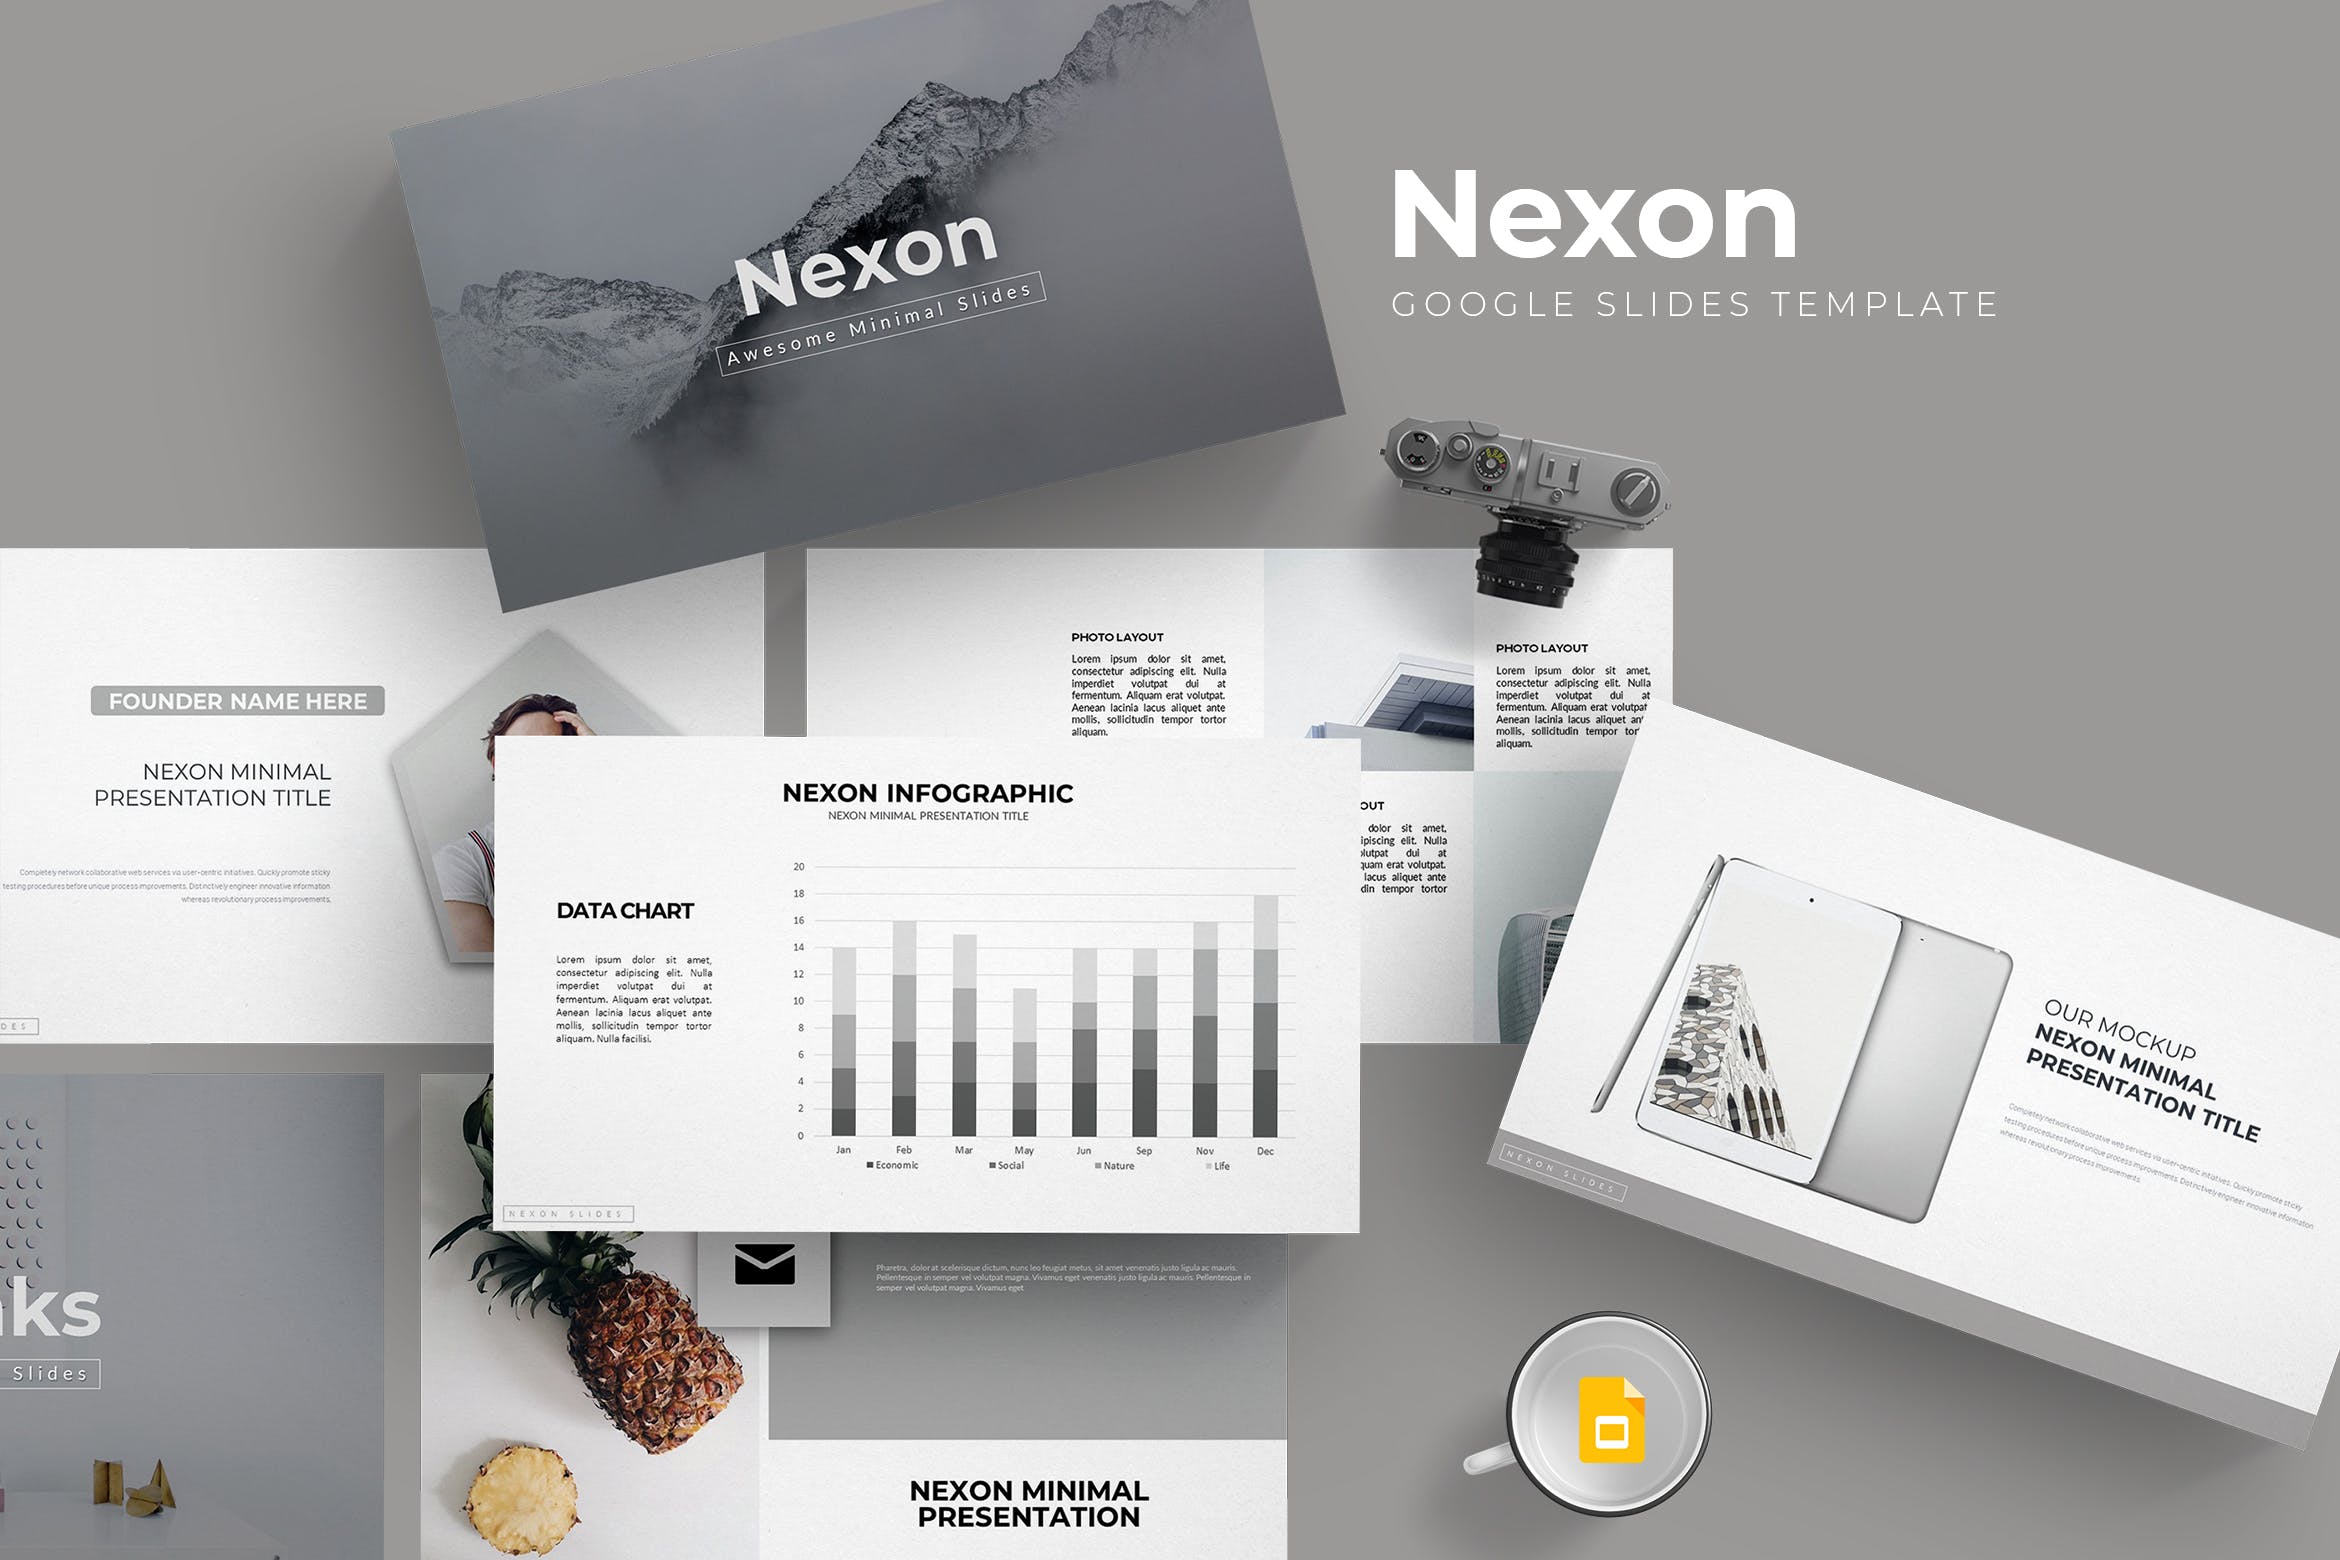 市场策划/商业活动宣讲PPT幻灯片模板Nexon Google Slides Template插图